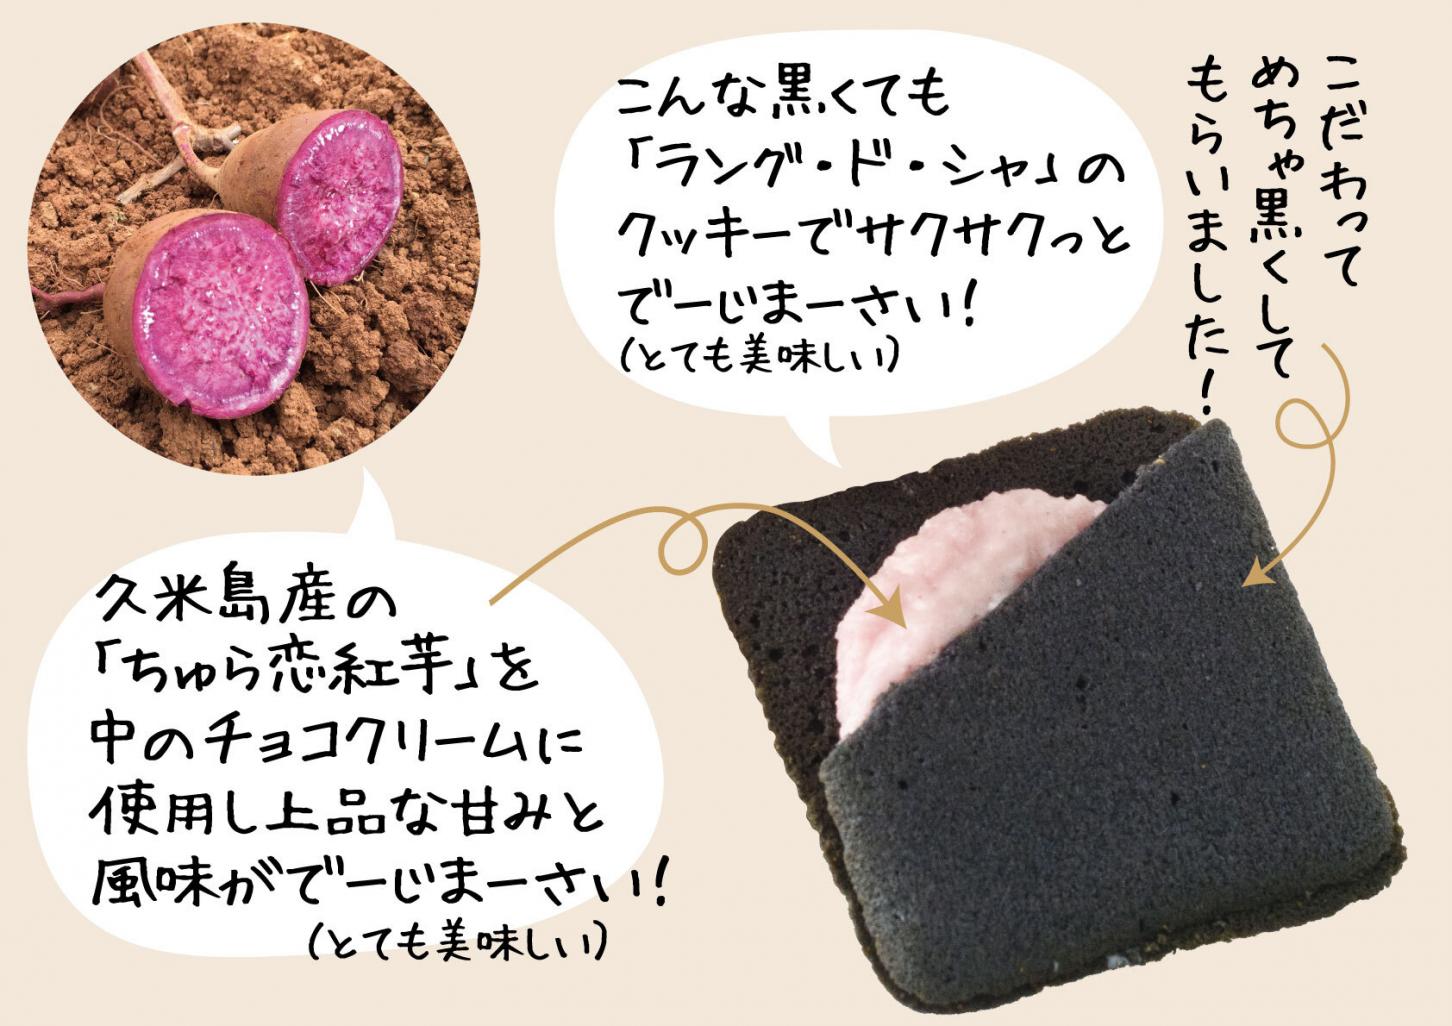 ラングドシャ クッキー お土産 食品 宮古島 紫芋ラングドシャ10枚入×1箱 南西産業